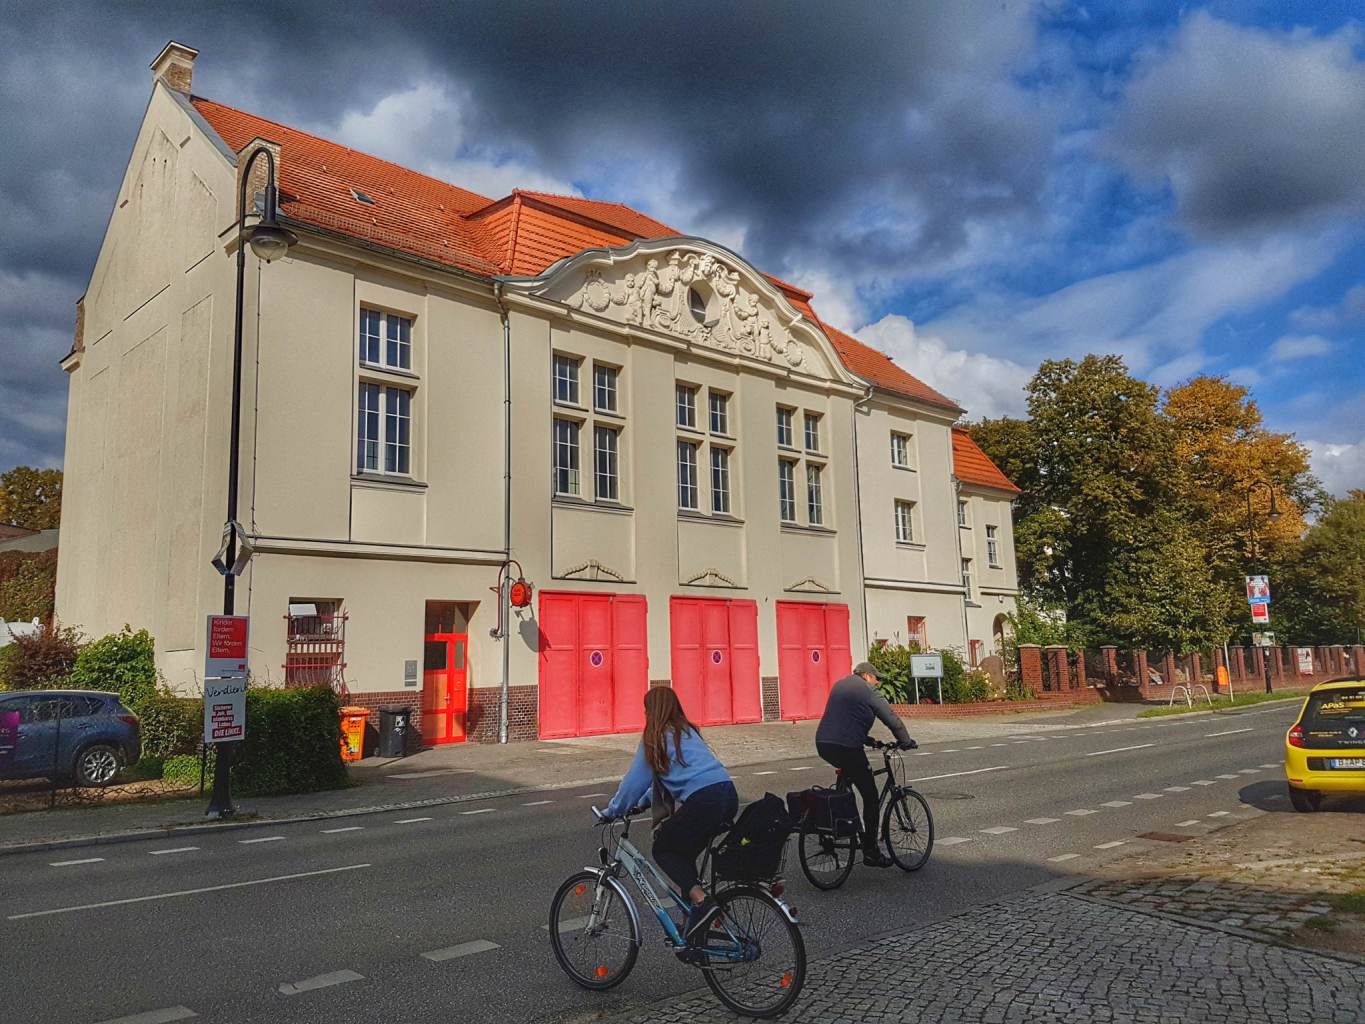 Historisches Gebäude der Freiwilligen Feuerwehr Niederschönhausen, hervorgegangen aus der Löschbrigade des Schlosses.